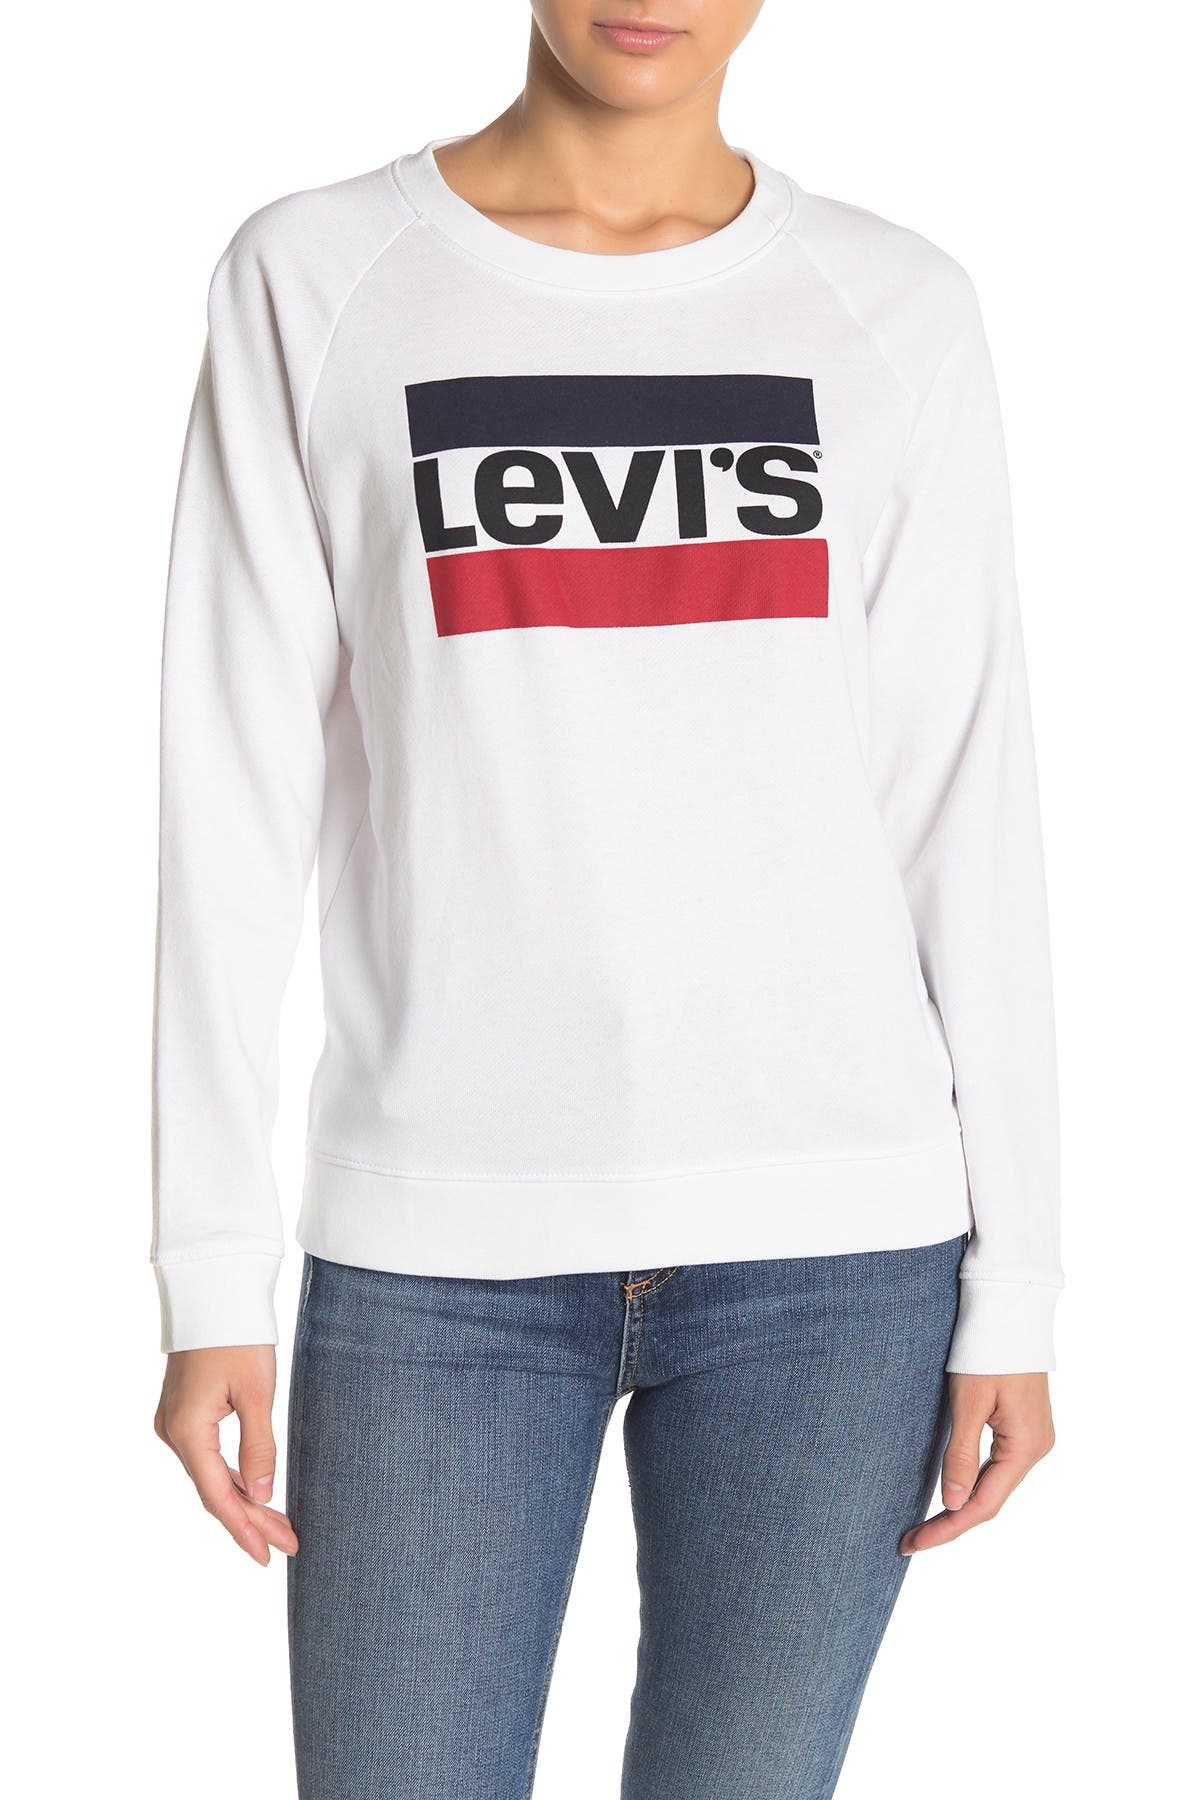 levi's graphic crew sweatshirt